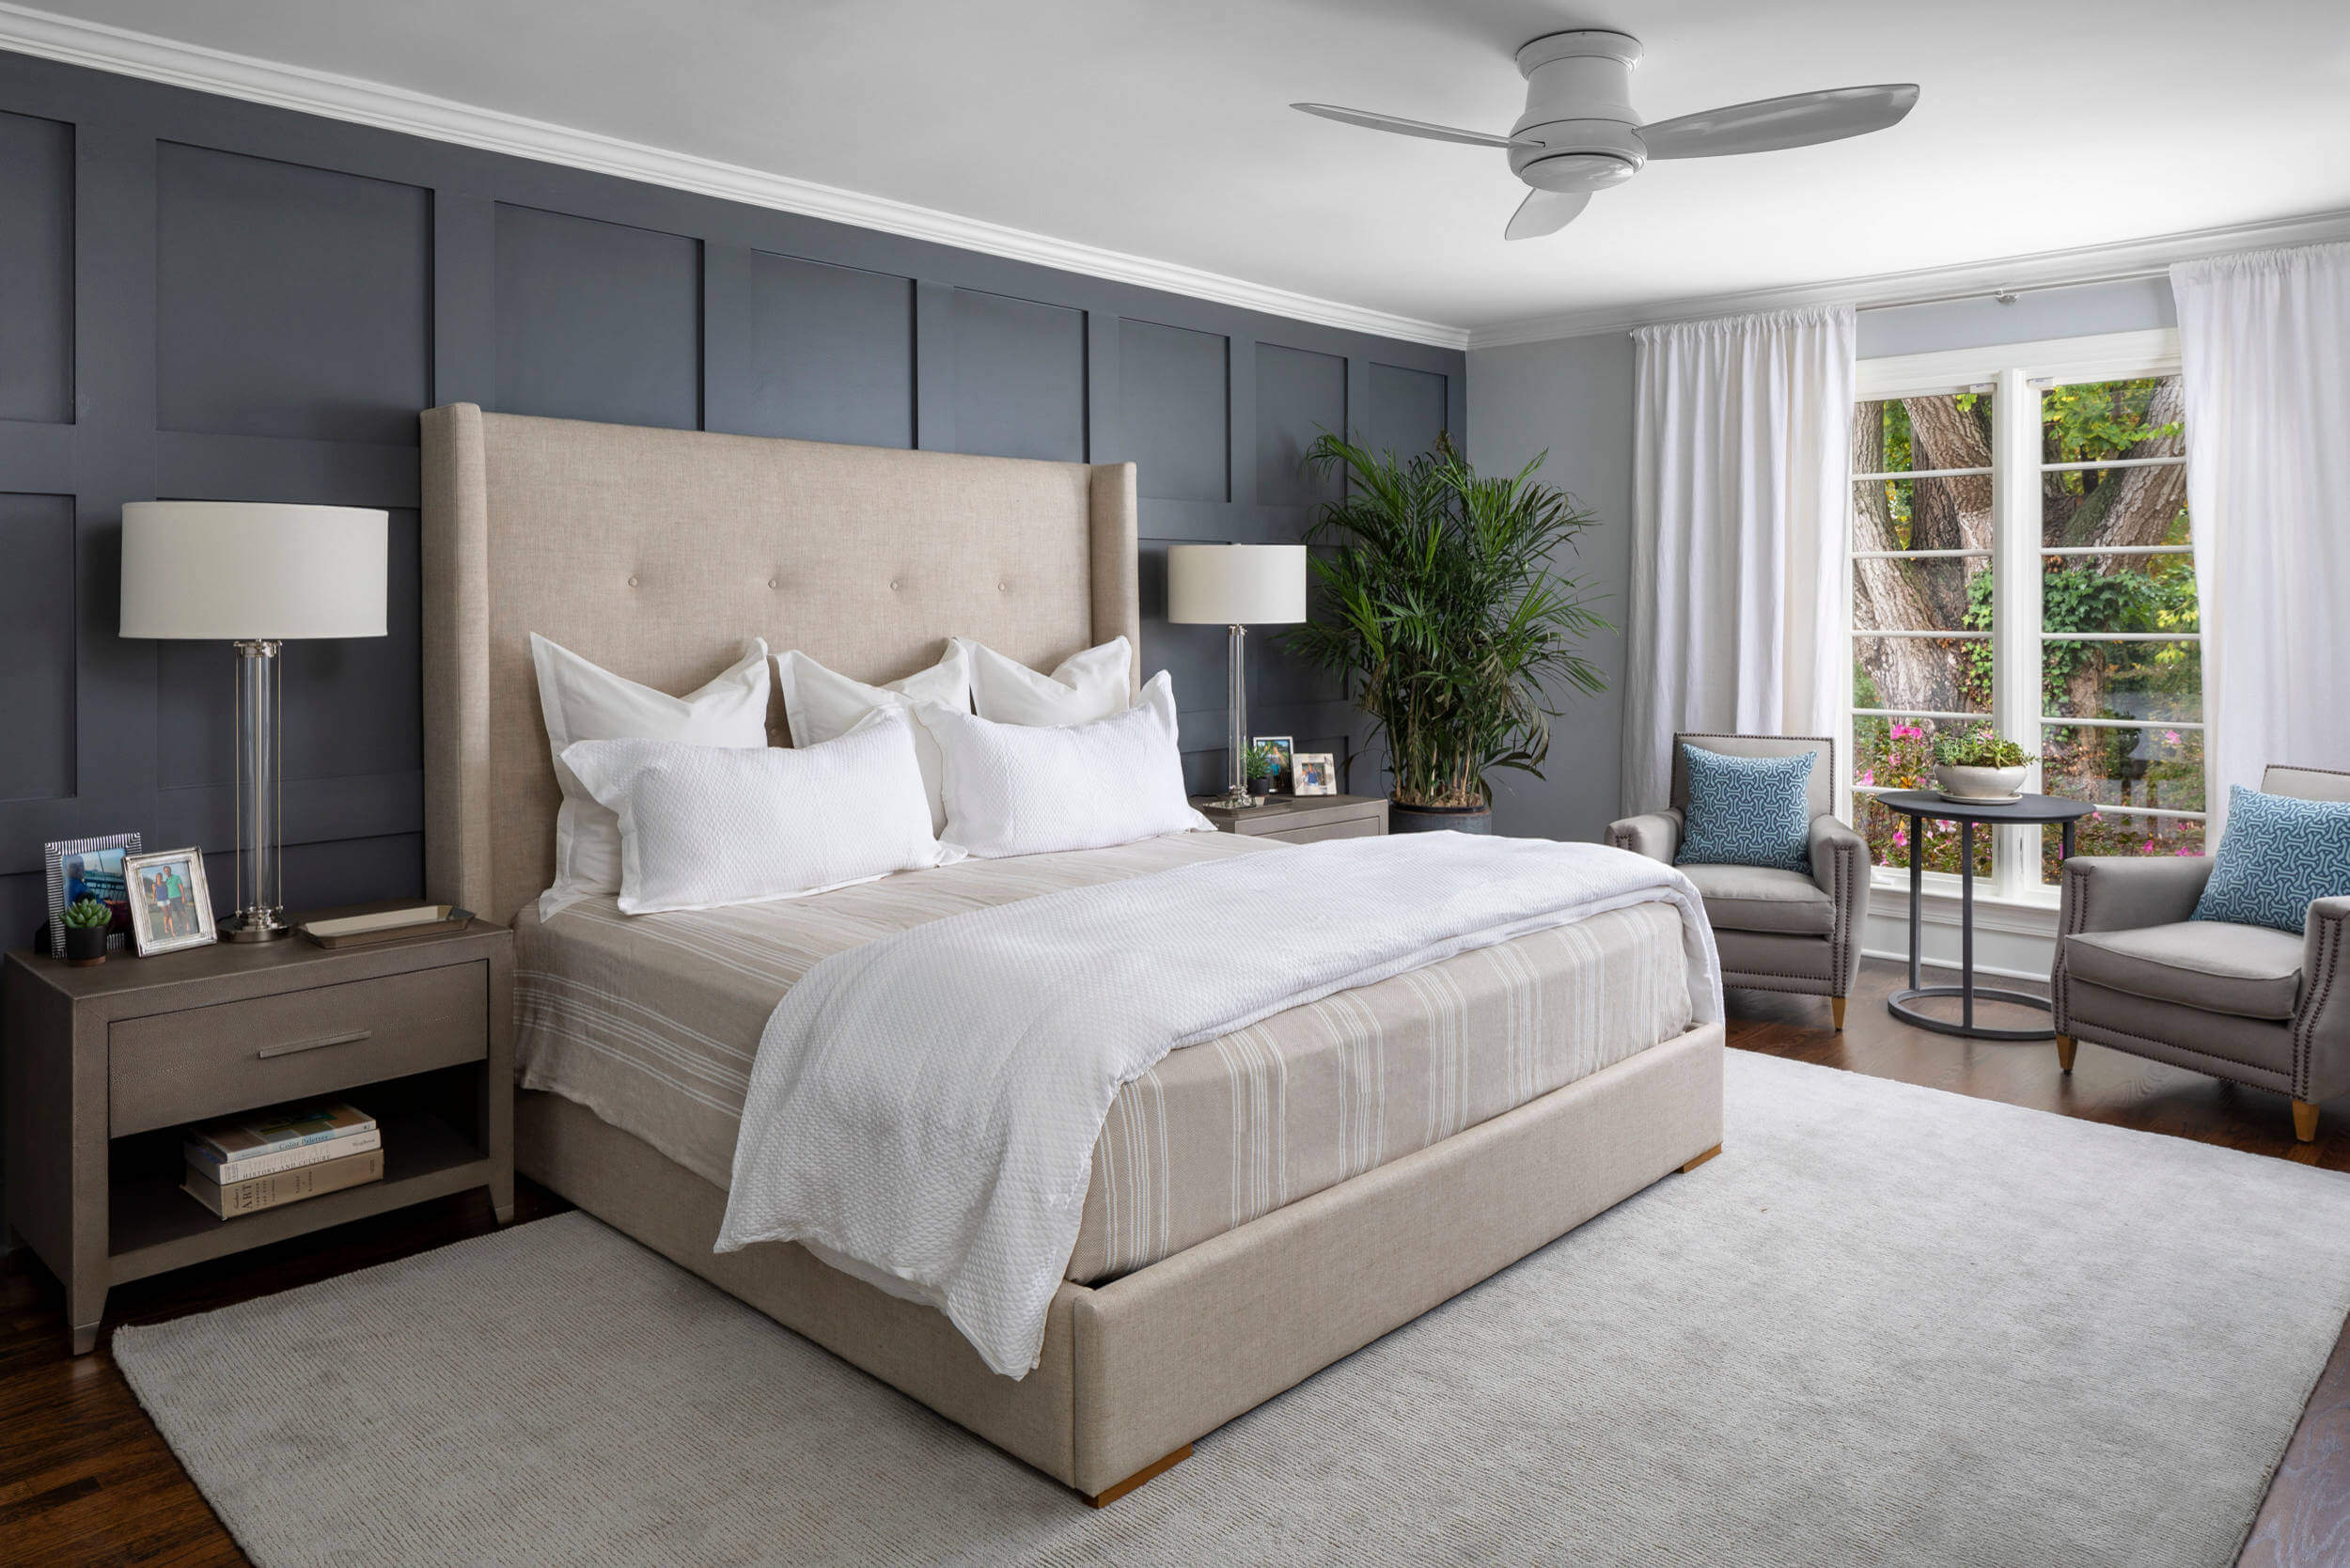 5 Cách để giường trong phòng ngủ chuẩn phong thủy giúp ngủ ngon, sức khỏe tốt – Nội thất Zito